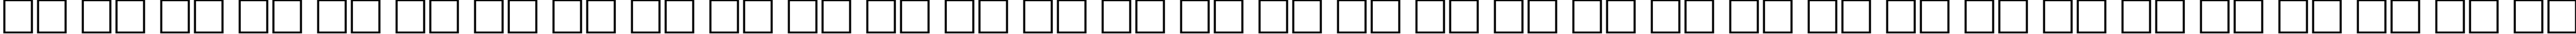 Пример написания русского алфавита шрифтом CricketLight